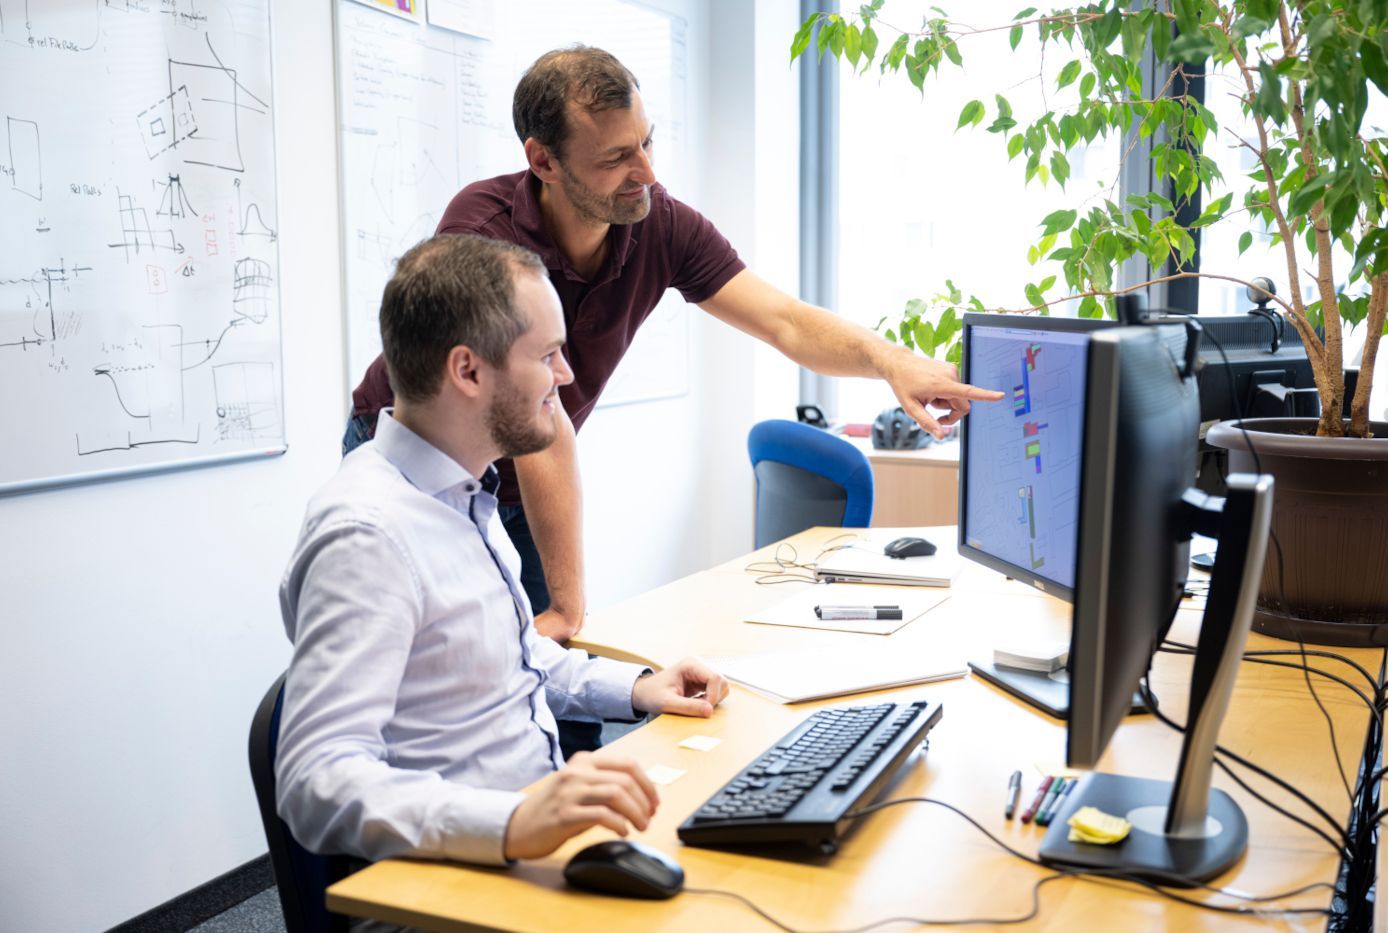 Zwei Forscher des VRVis arbeiten gemeinsam an einem Desktop-Computer. Ein Forscher sitzt, der andere steht und deutet auf den Bildschirm. Im Hintergrund ist ein Whiteboard mit Forschungsnotizen zu sehen.